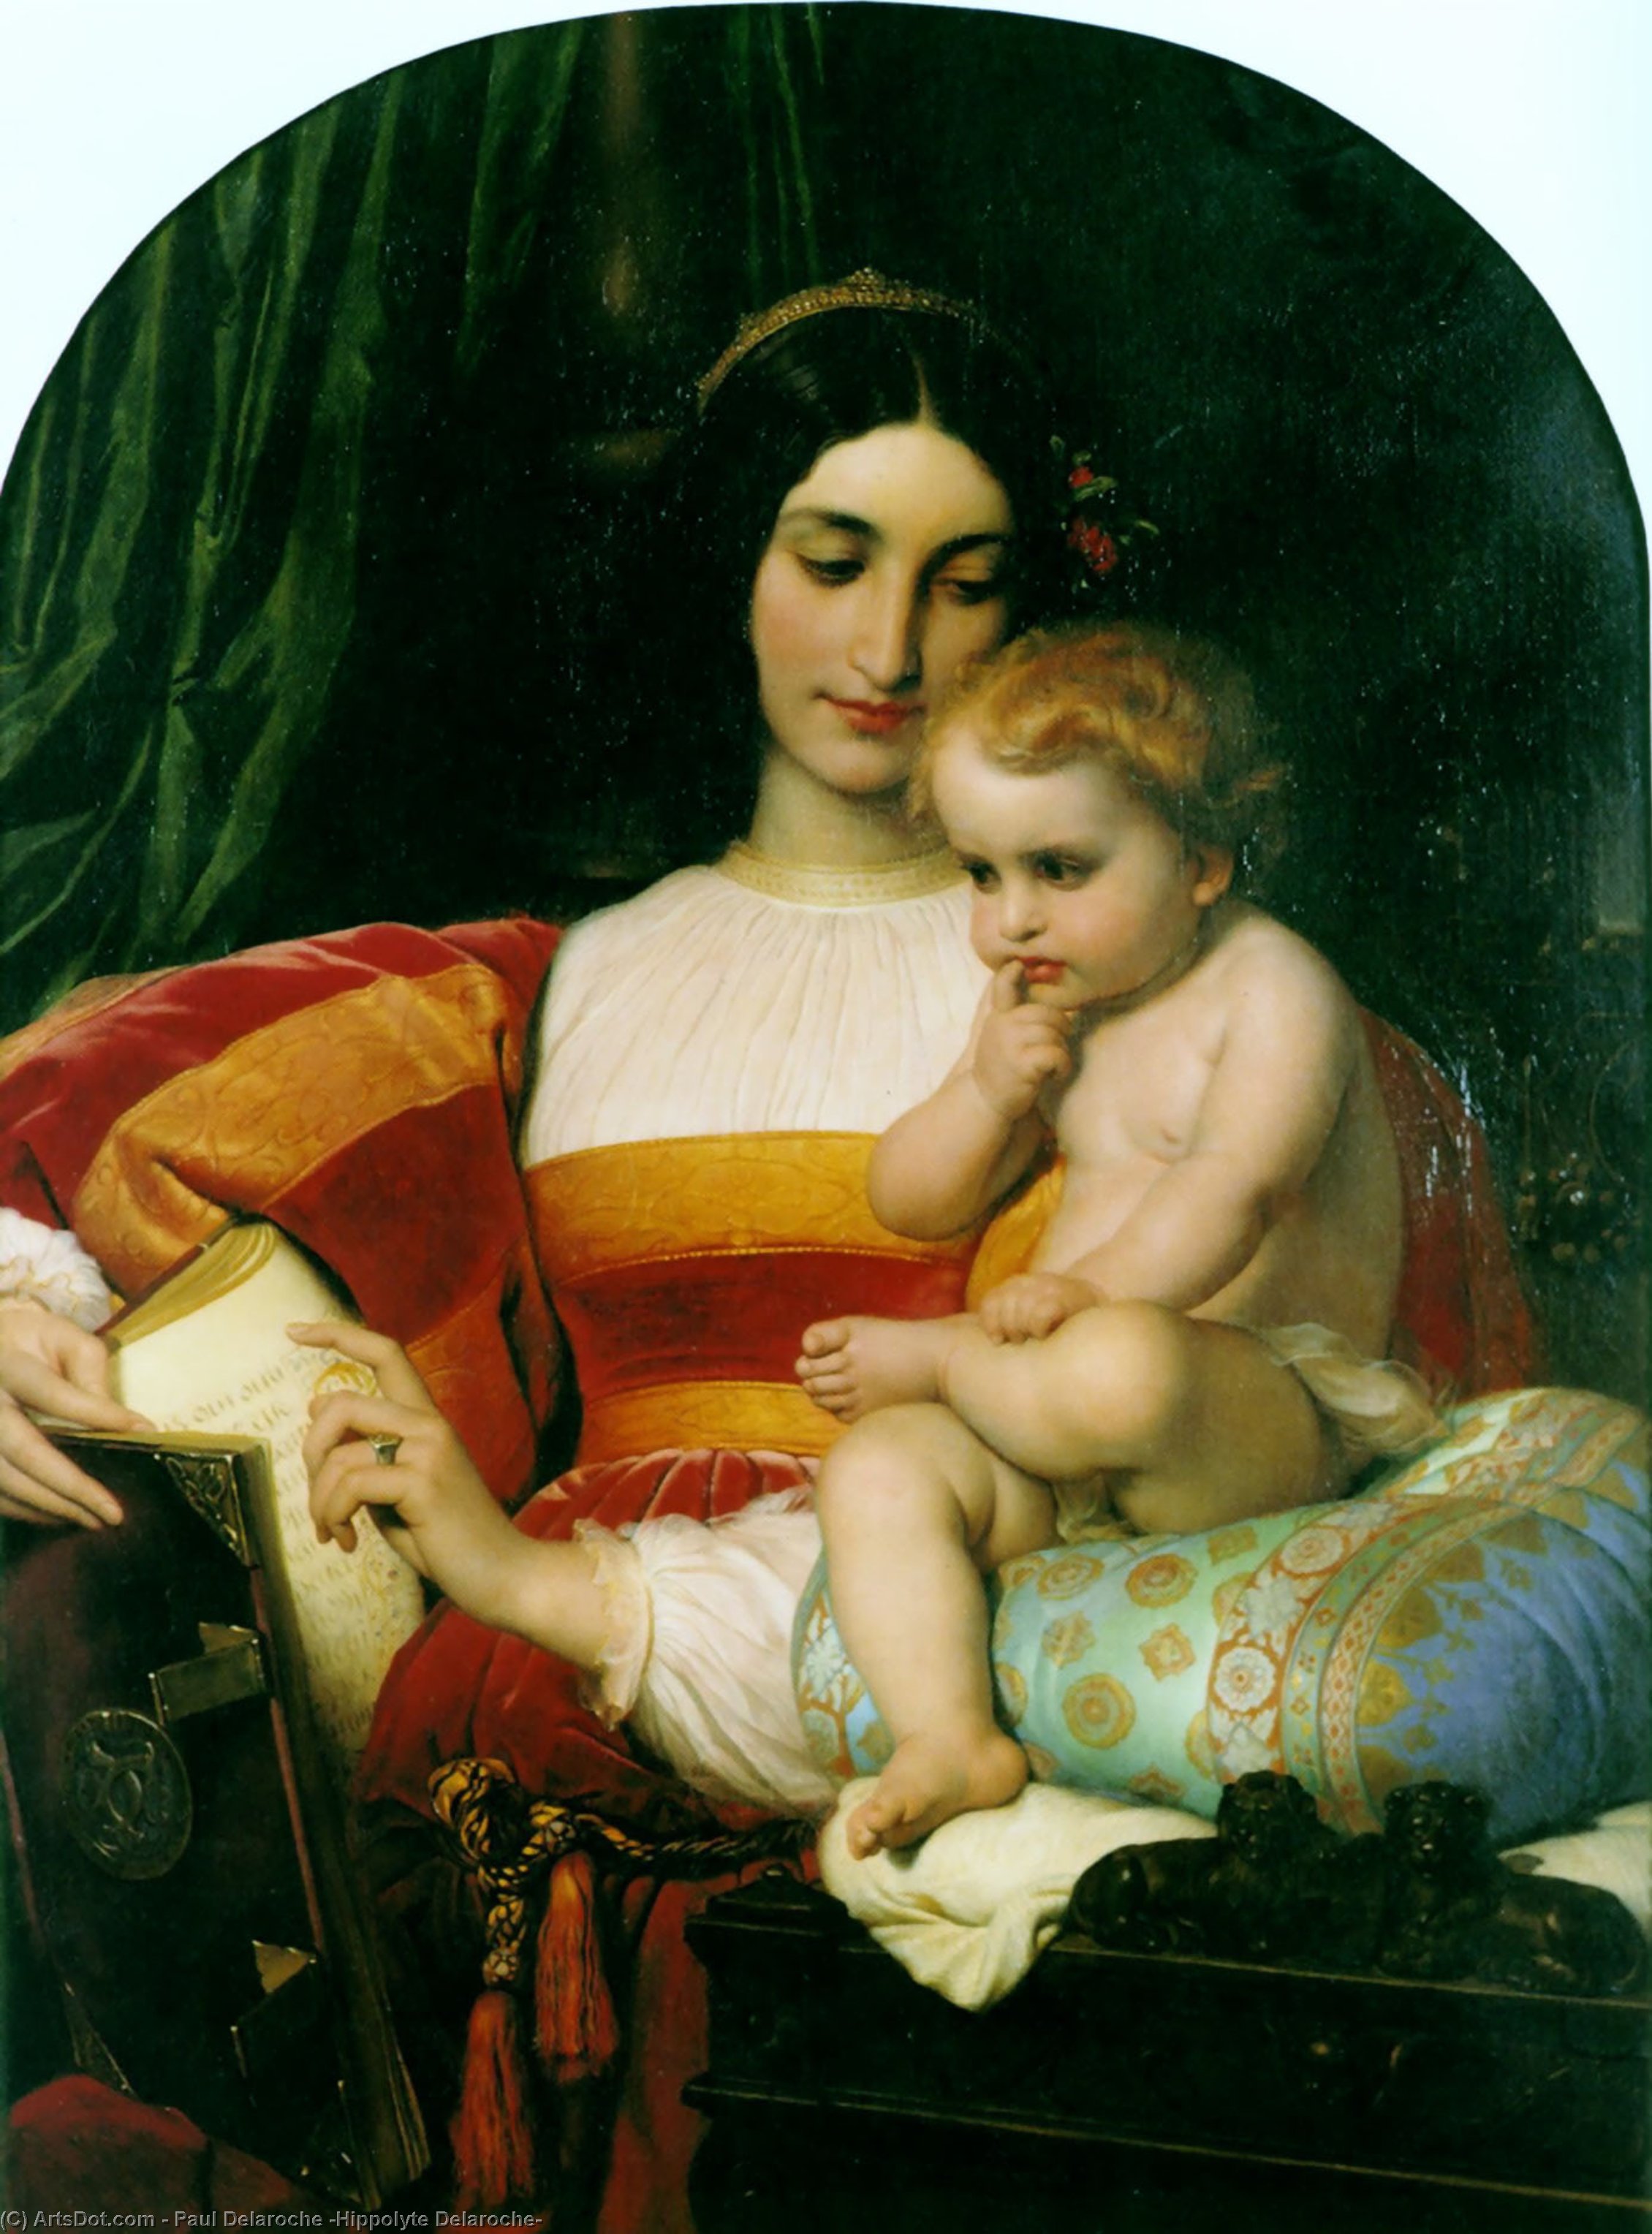 Wikioo.org - The Encyclopedia of Fine Arts - Painting, Artwork by Paul Delaroche (Hippolyte Delaroche) - The Childhood of Pico della Mirandola